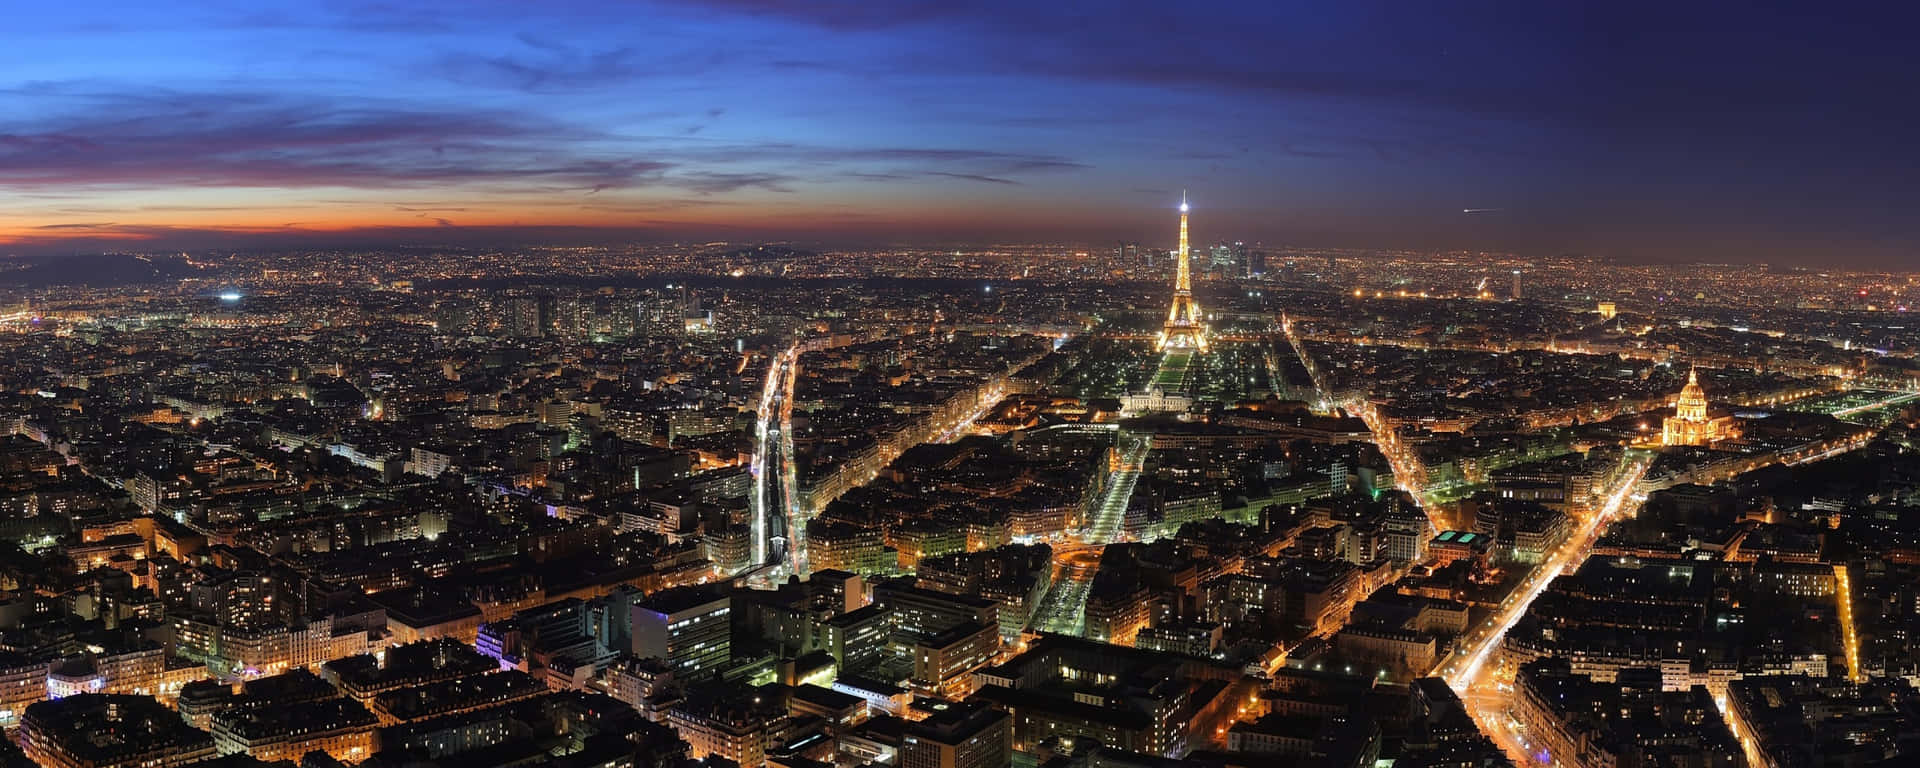 Latorre Eiffel Iluminada Por La Luna En La Noche En París, Francia. Fondo de pantalla